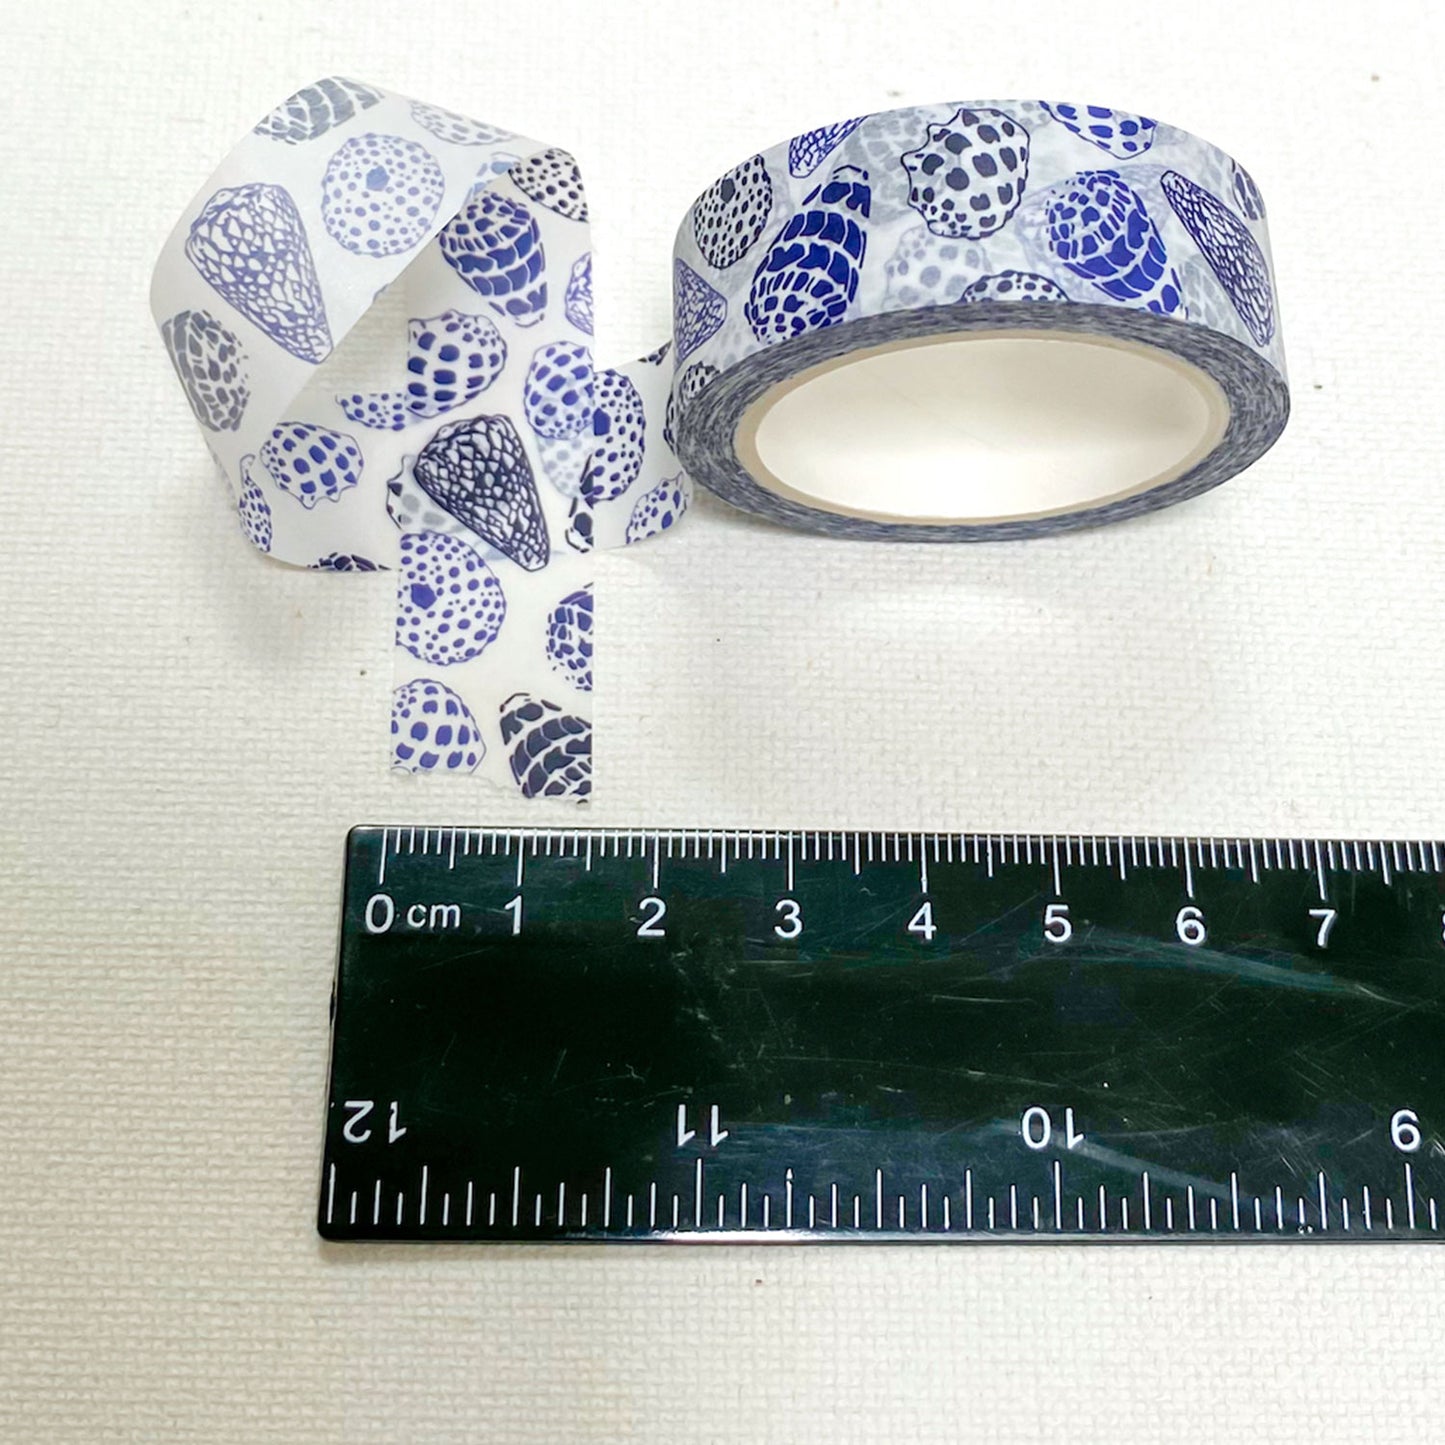 15mm x 10m Washi Tape - Indigo Seashells